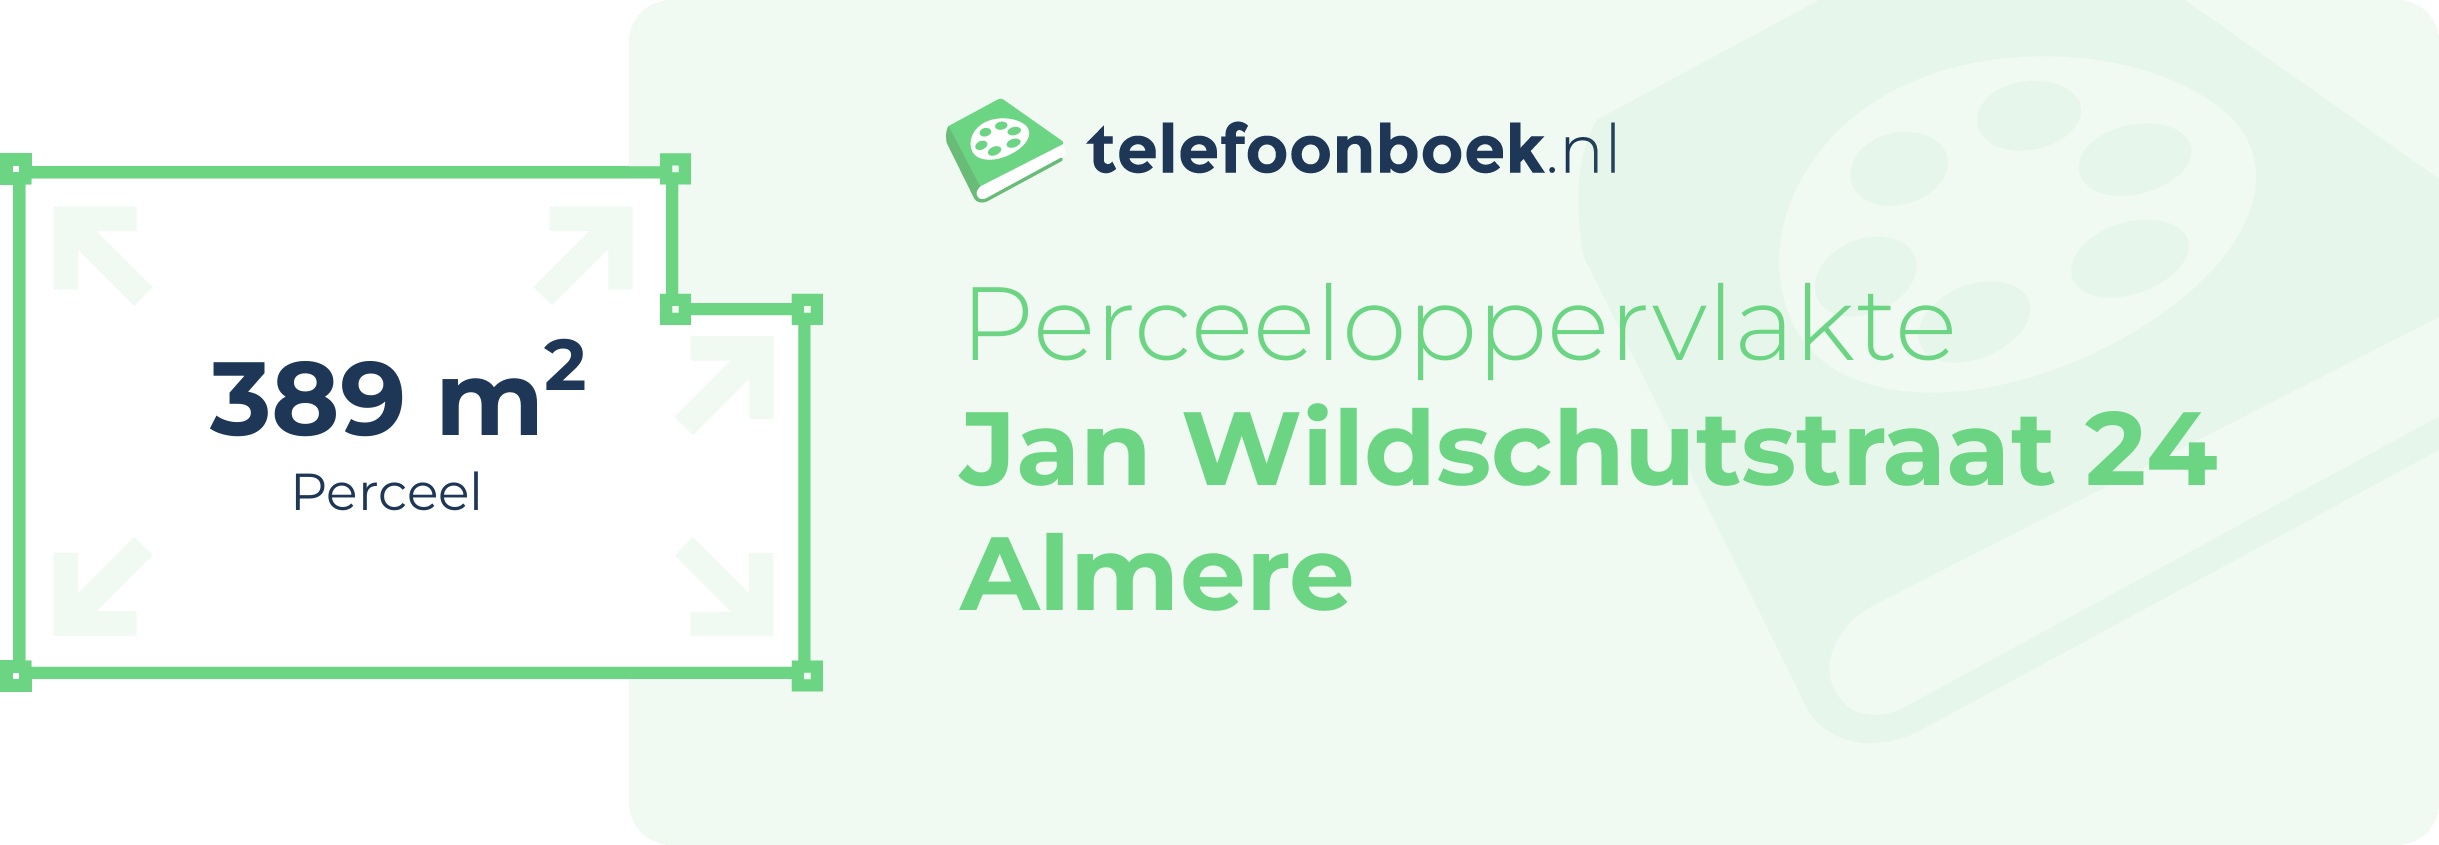 Perceeloppervlakte Jan Wildschutstraat 24 Almere